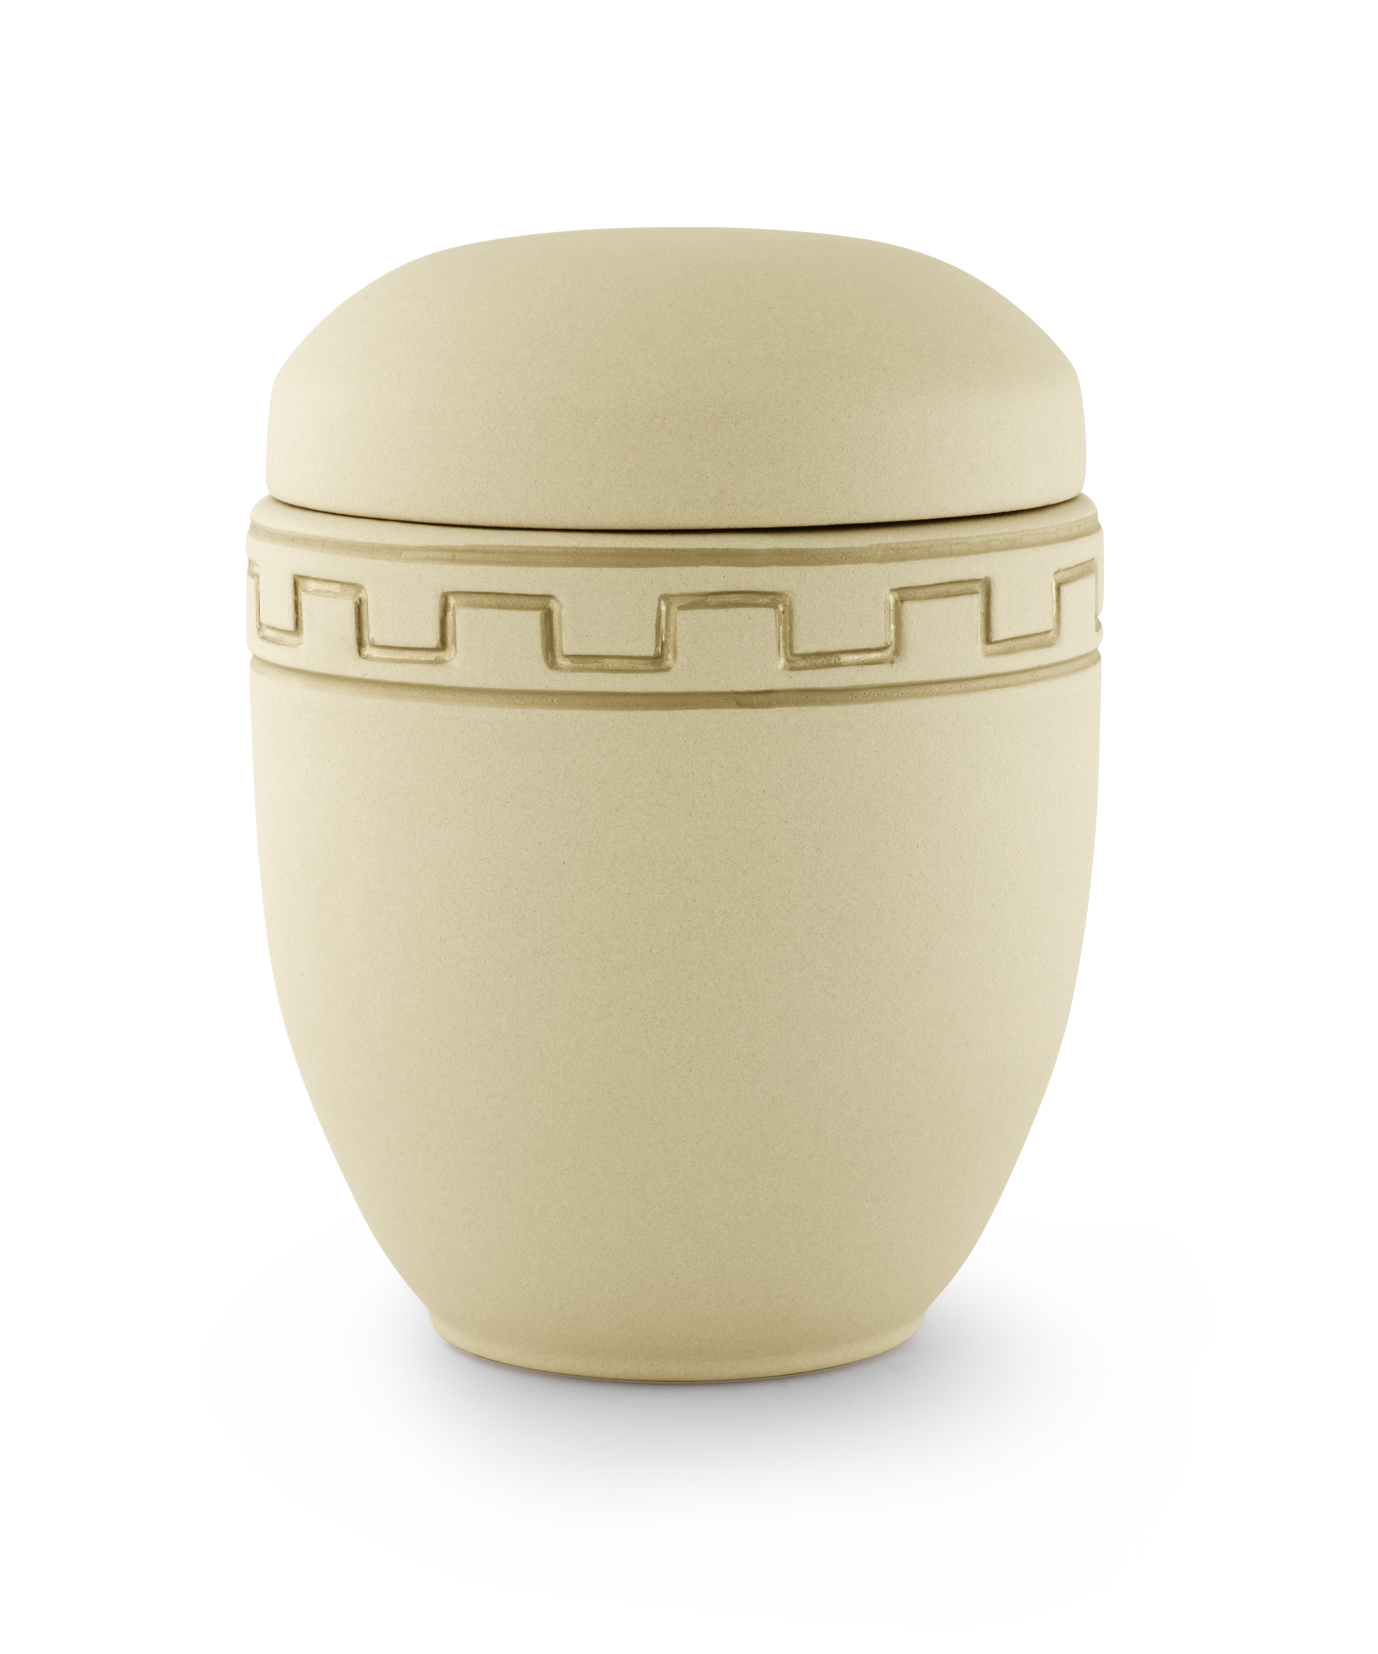 Völsing urn Meander decoration ceramic